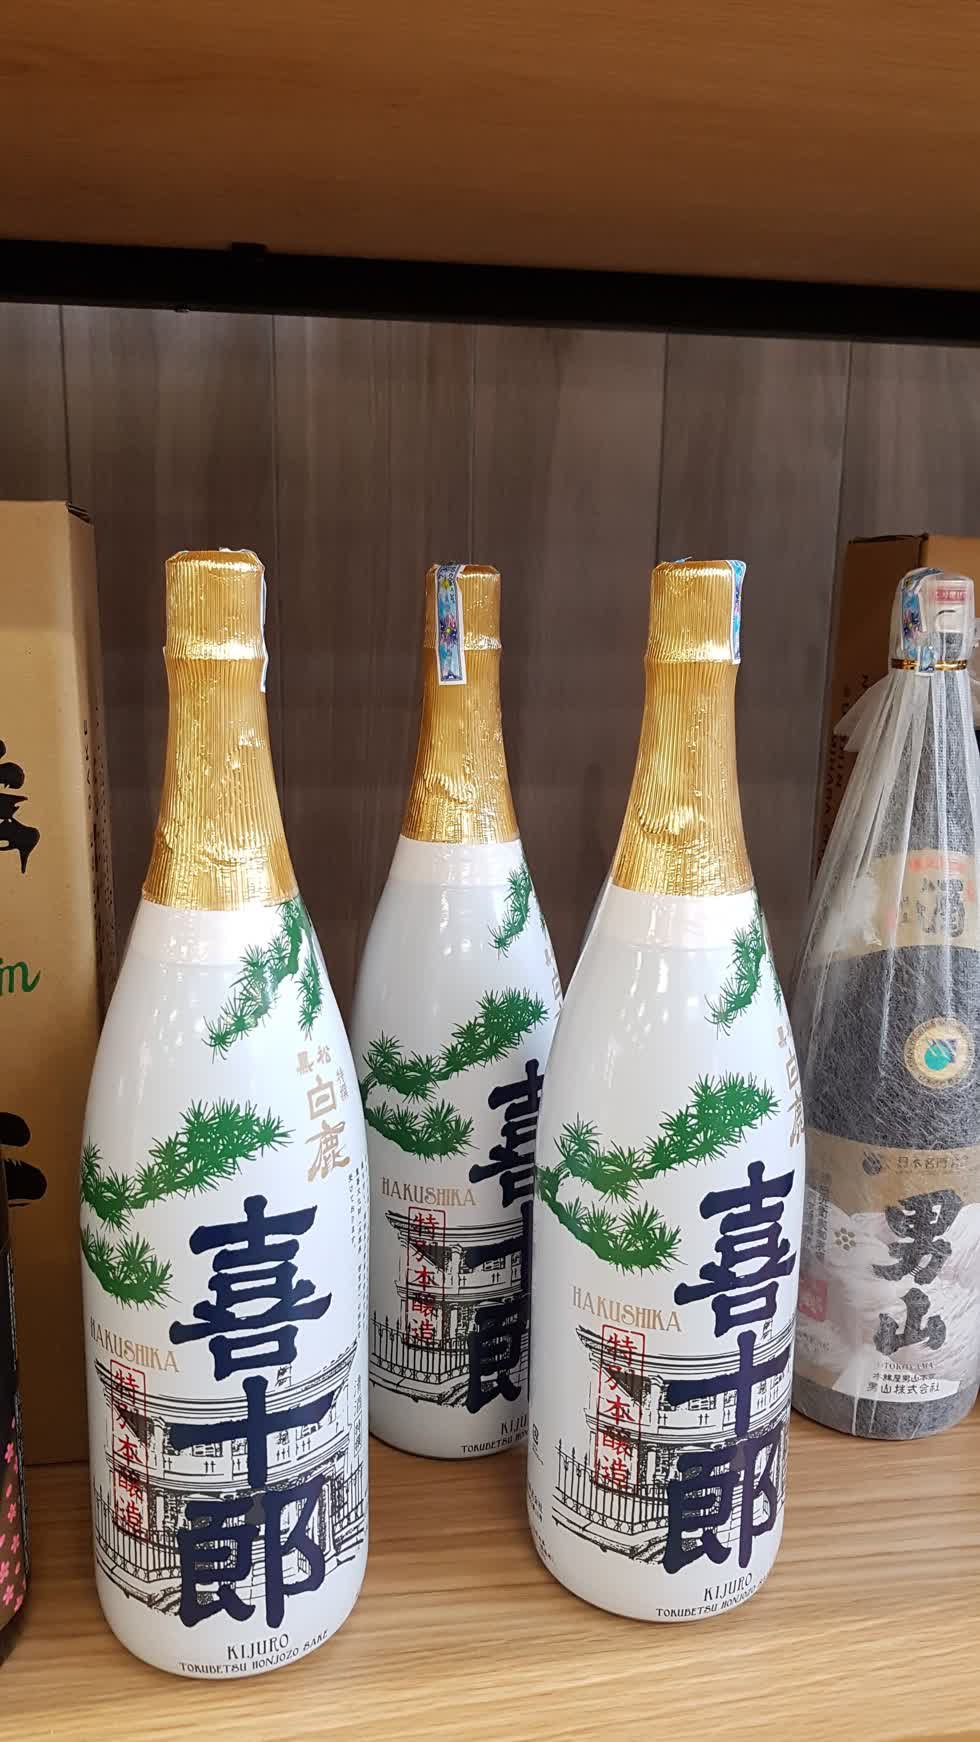 Rất nhiều loại rượu có nguồn gốc Nhật Bản được bày bán. Ảnh: Cẩm Viên